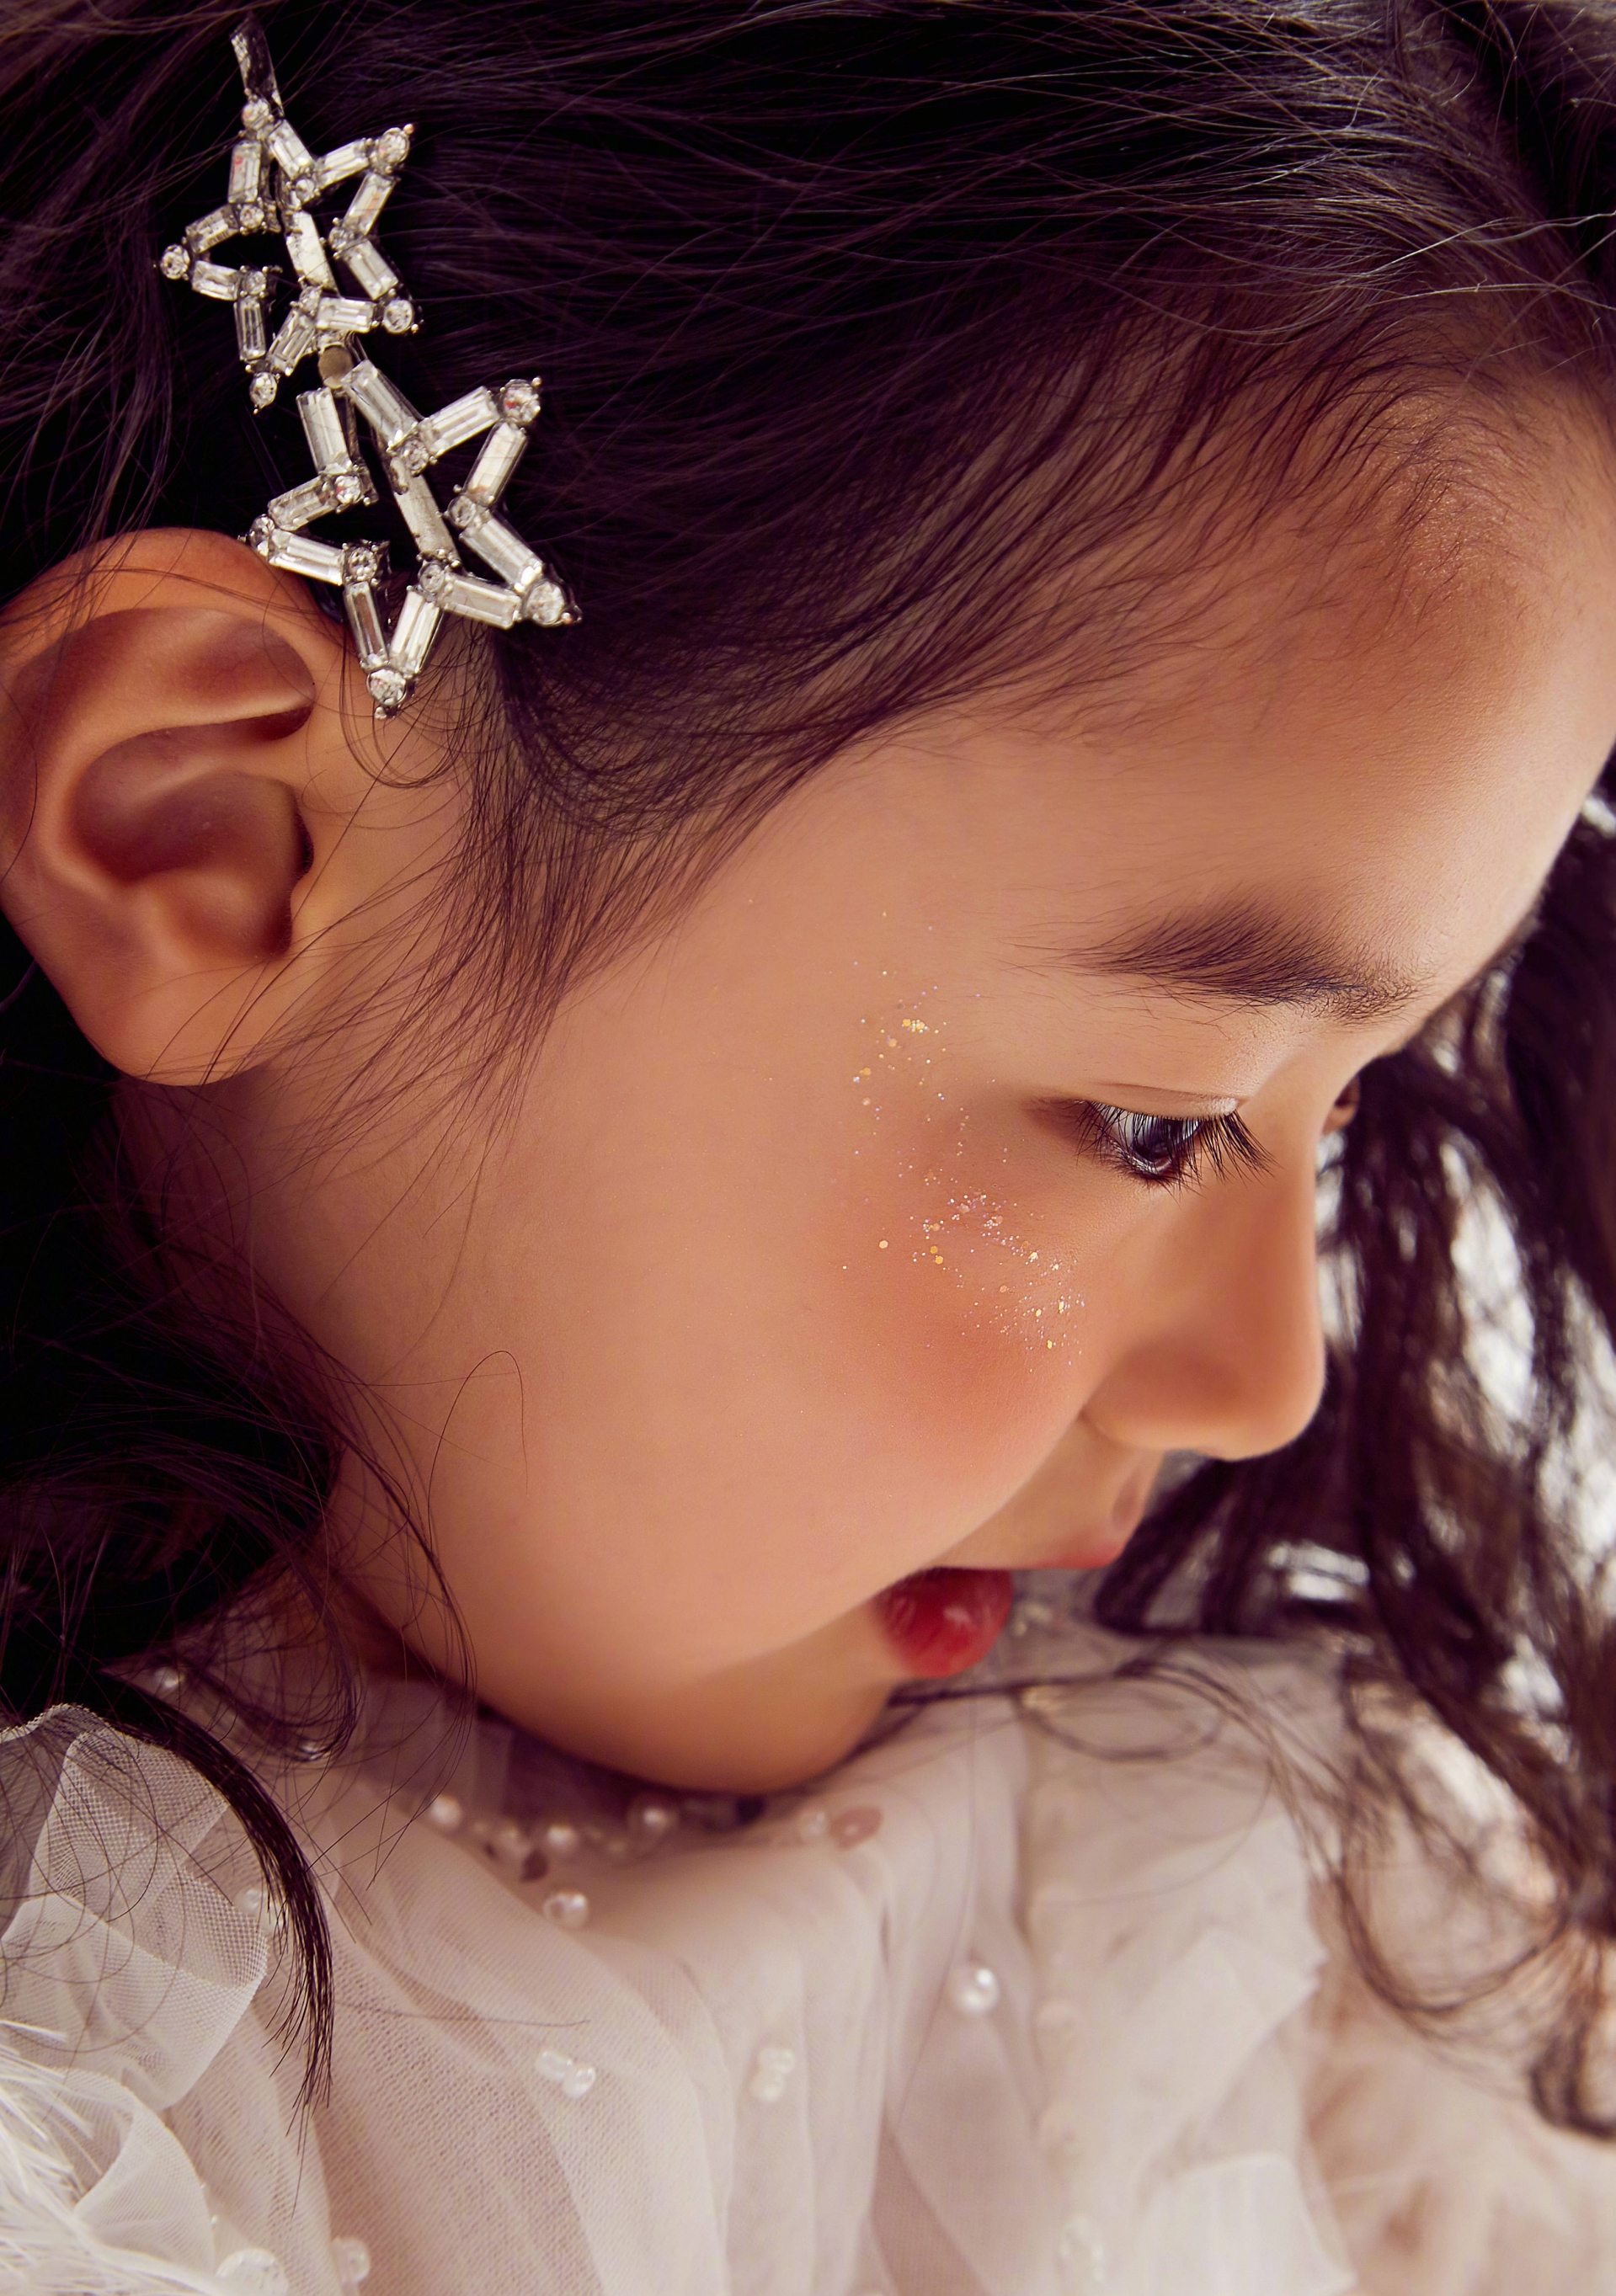 Con gái 'Điêu Thuyền' Đổng Tuyền mới 5 tuổi đã xinh tựa thiên thần, thả nhẹ bộ ảnh cũng gây sốt Weibo 5